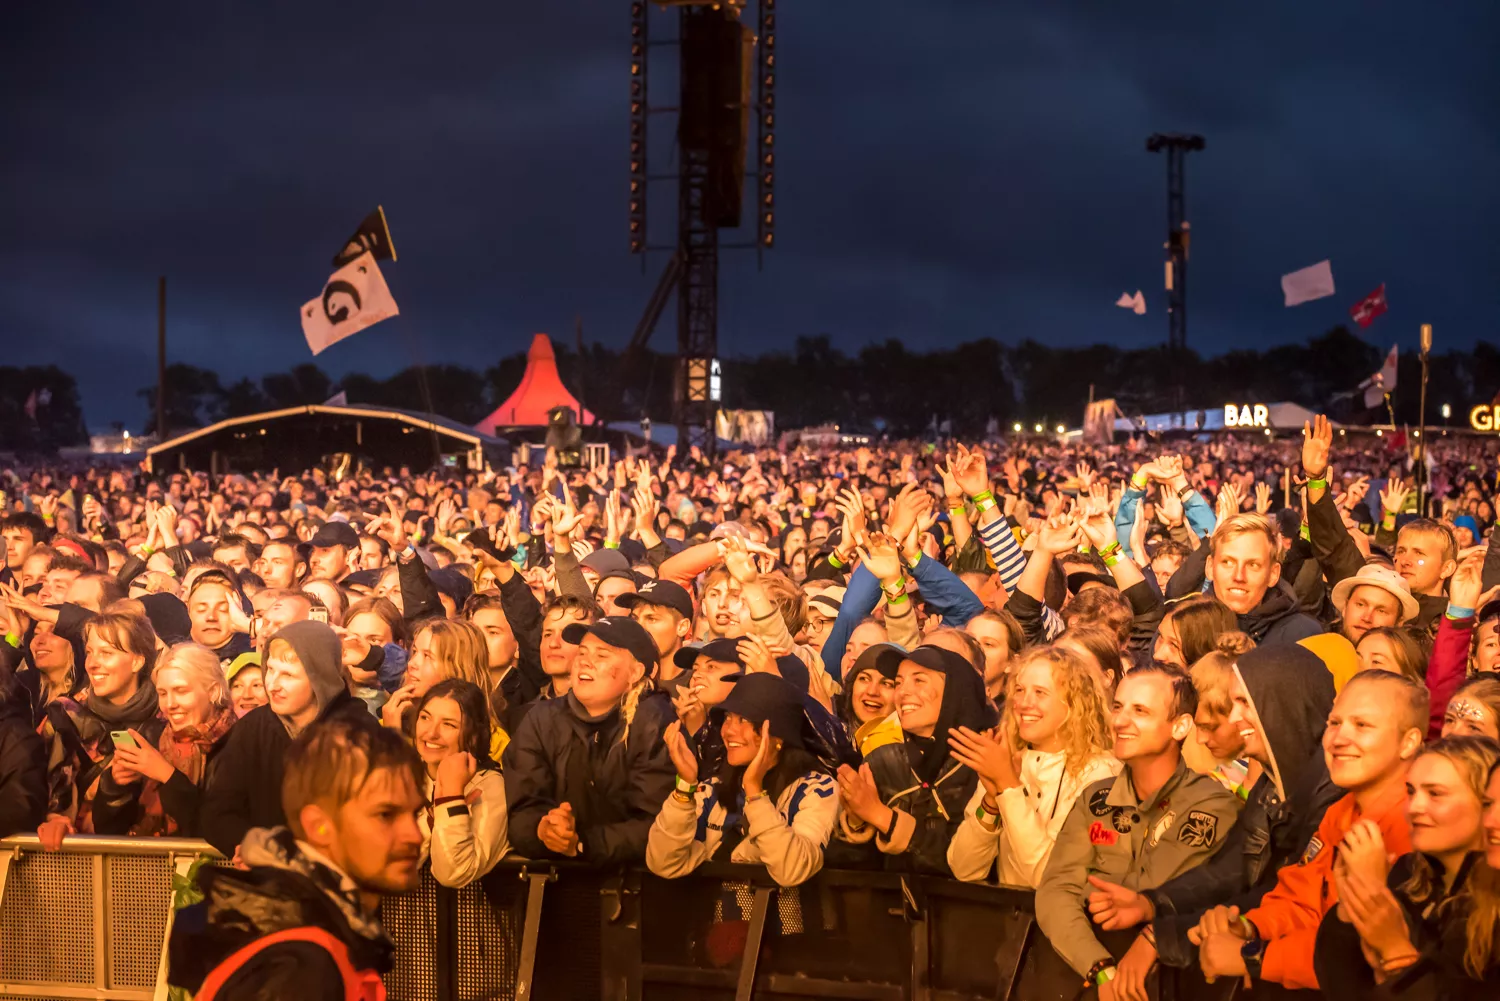 Dansk Live om festival-kompensation: "Det er længe ventet" 